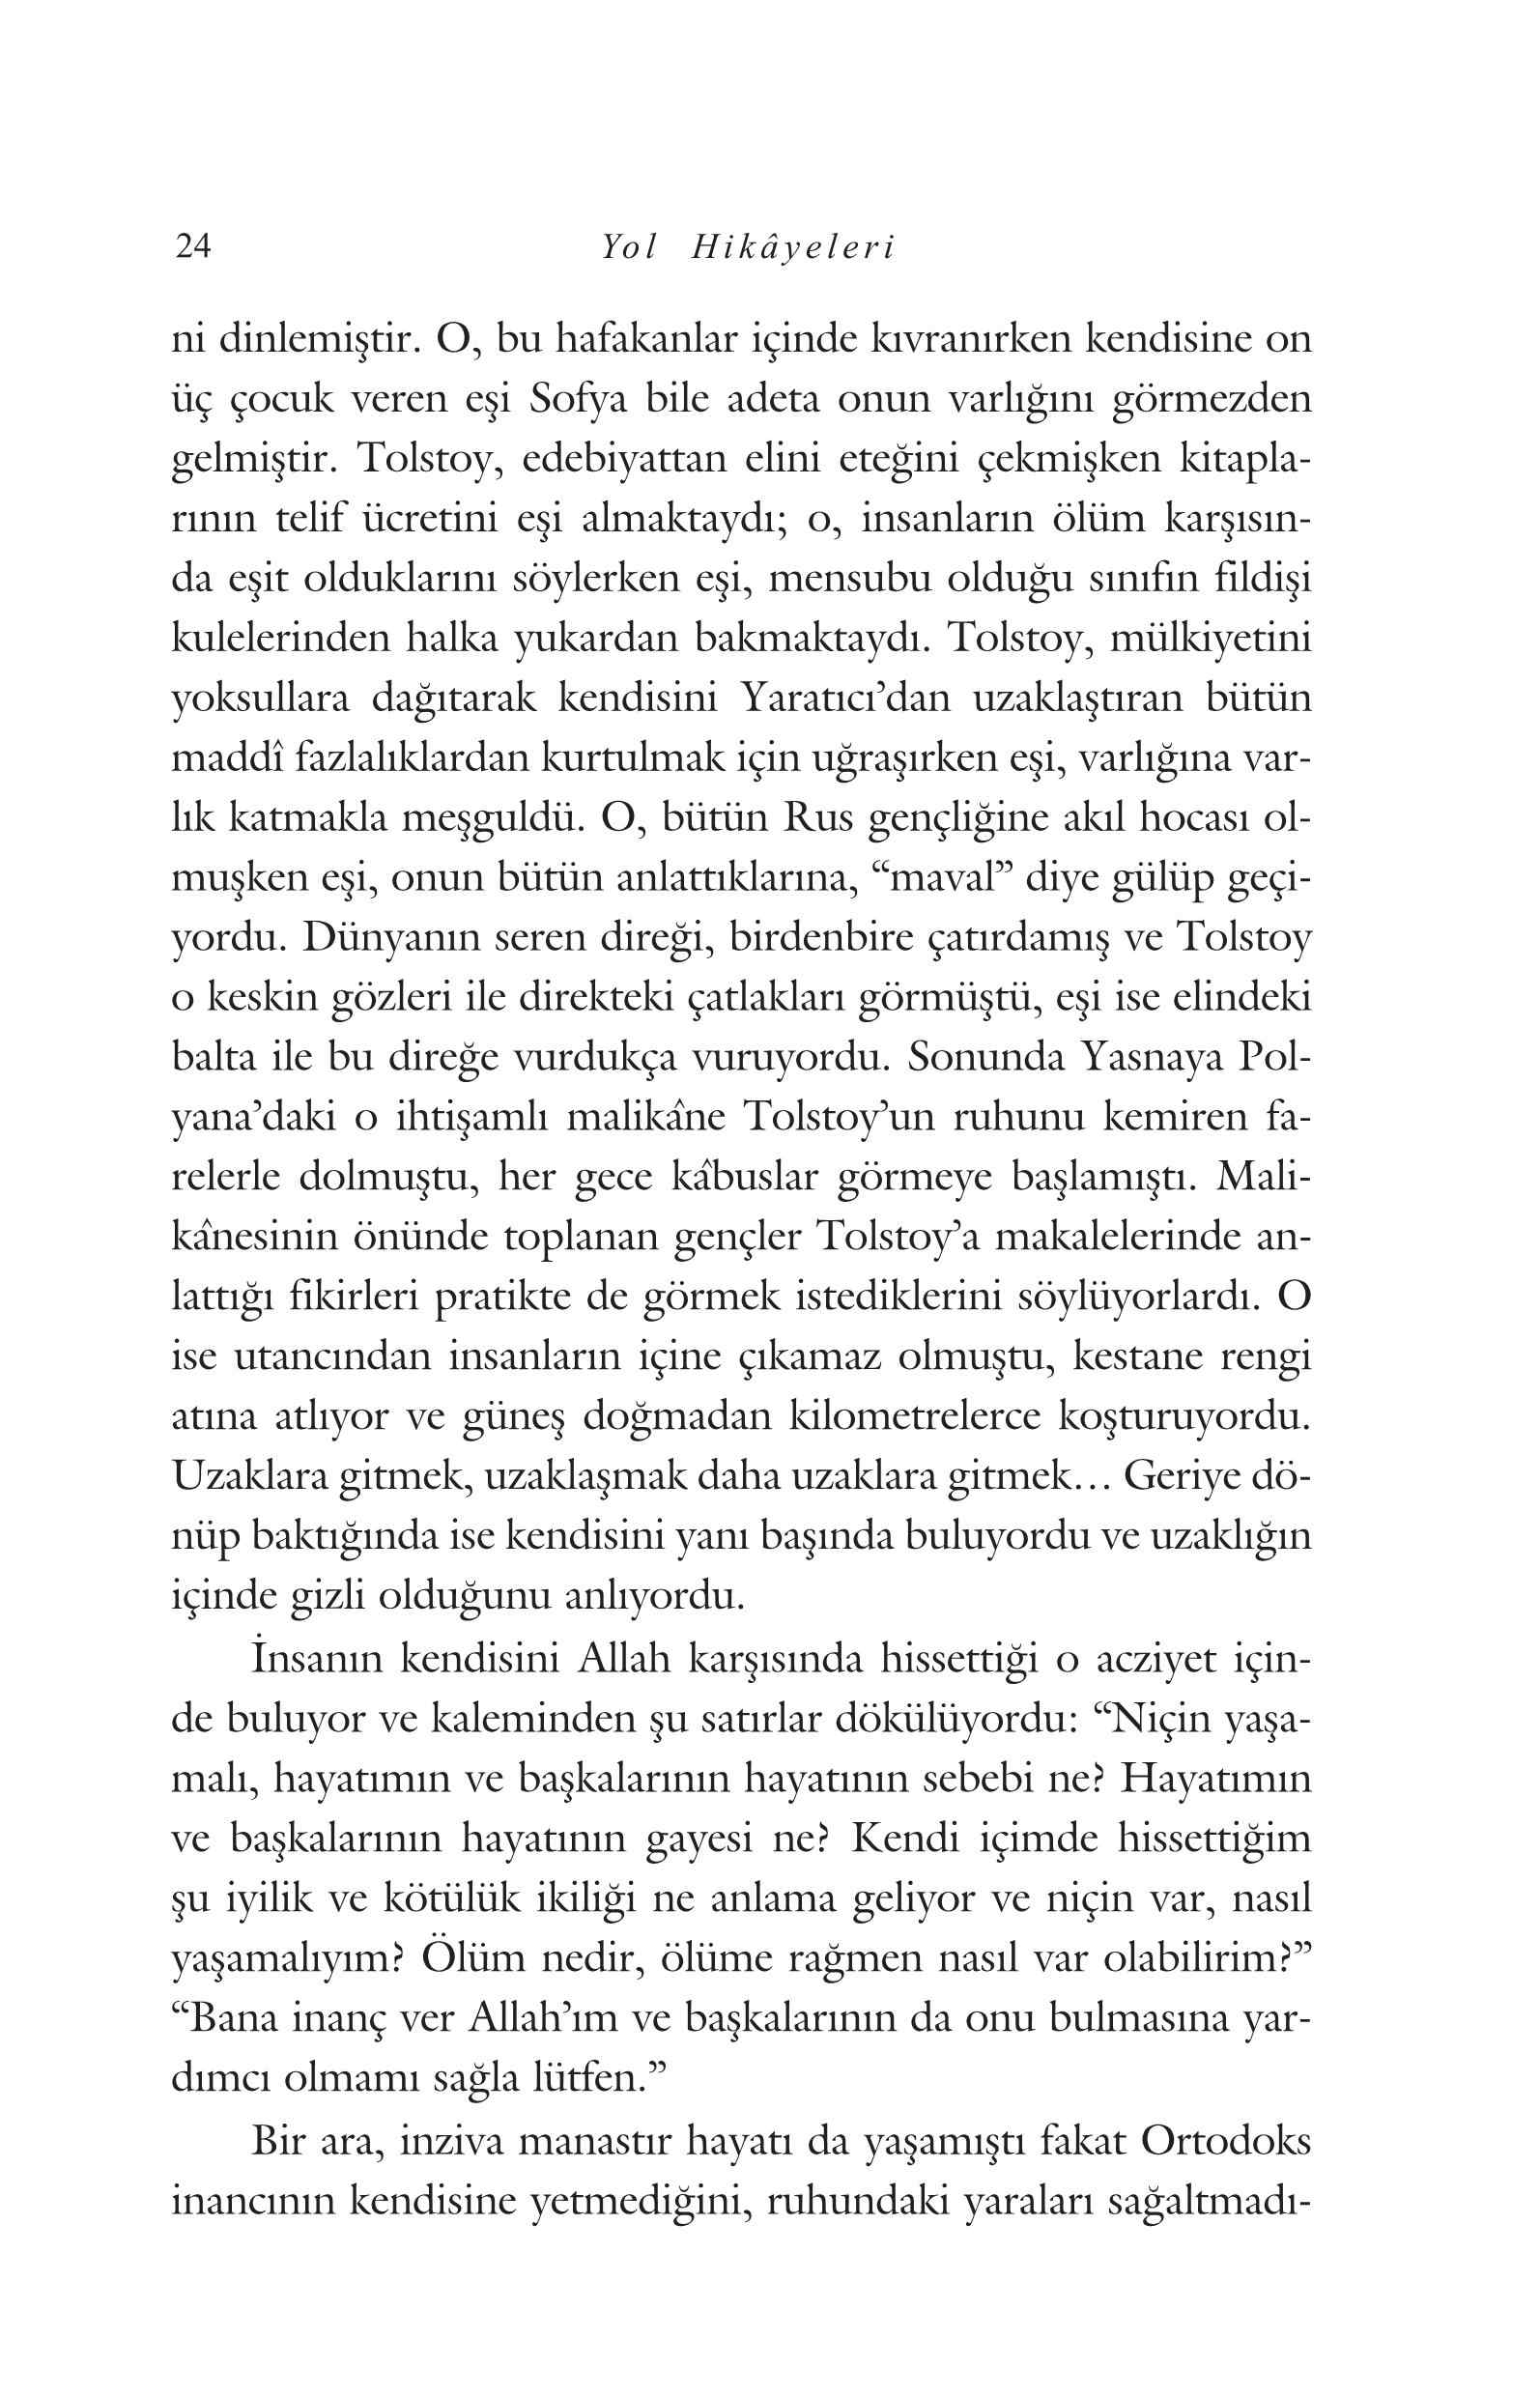 Mehmet Oztunc - Yol Hikayeleri - KaynakYayinlari.pdf, 121-Sayfa 